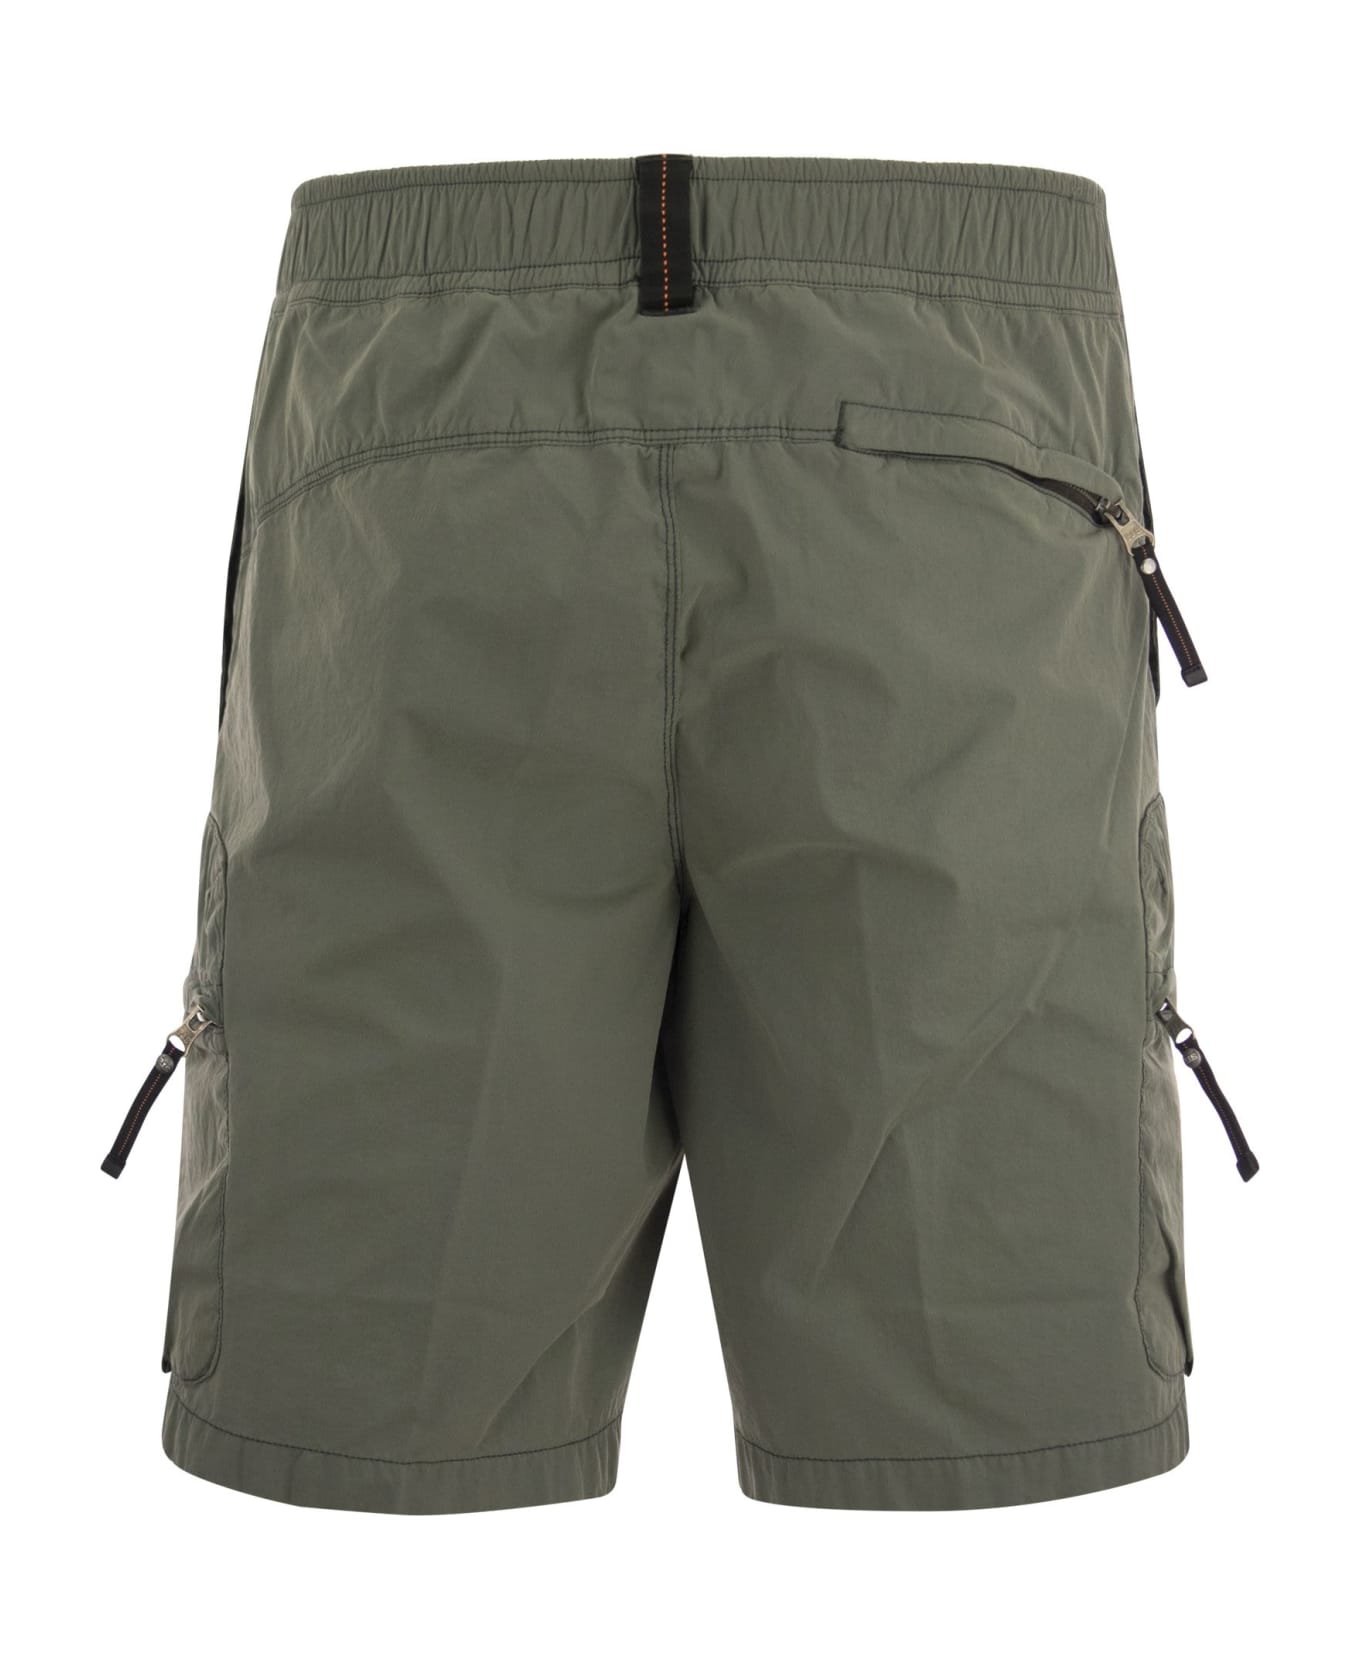 Parajumpers Walton - Cargo Bermuda Shorts - Olive